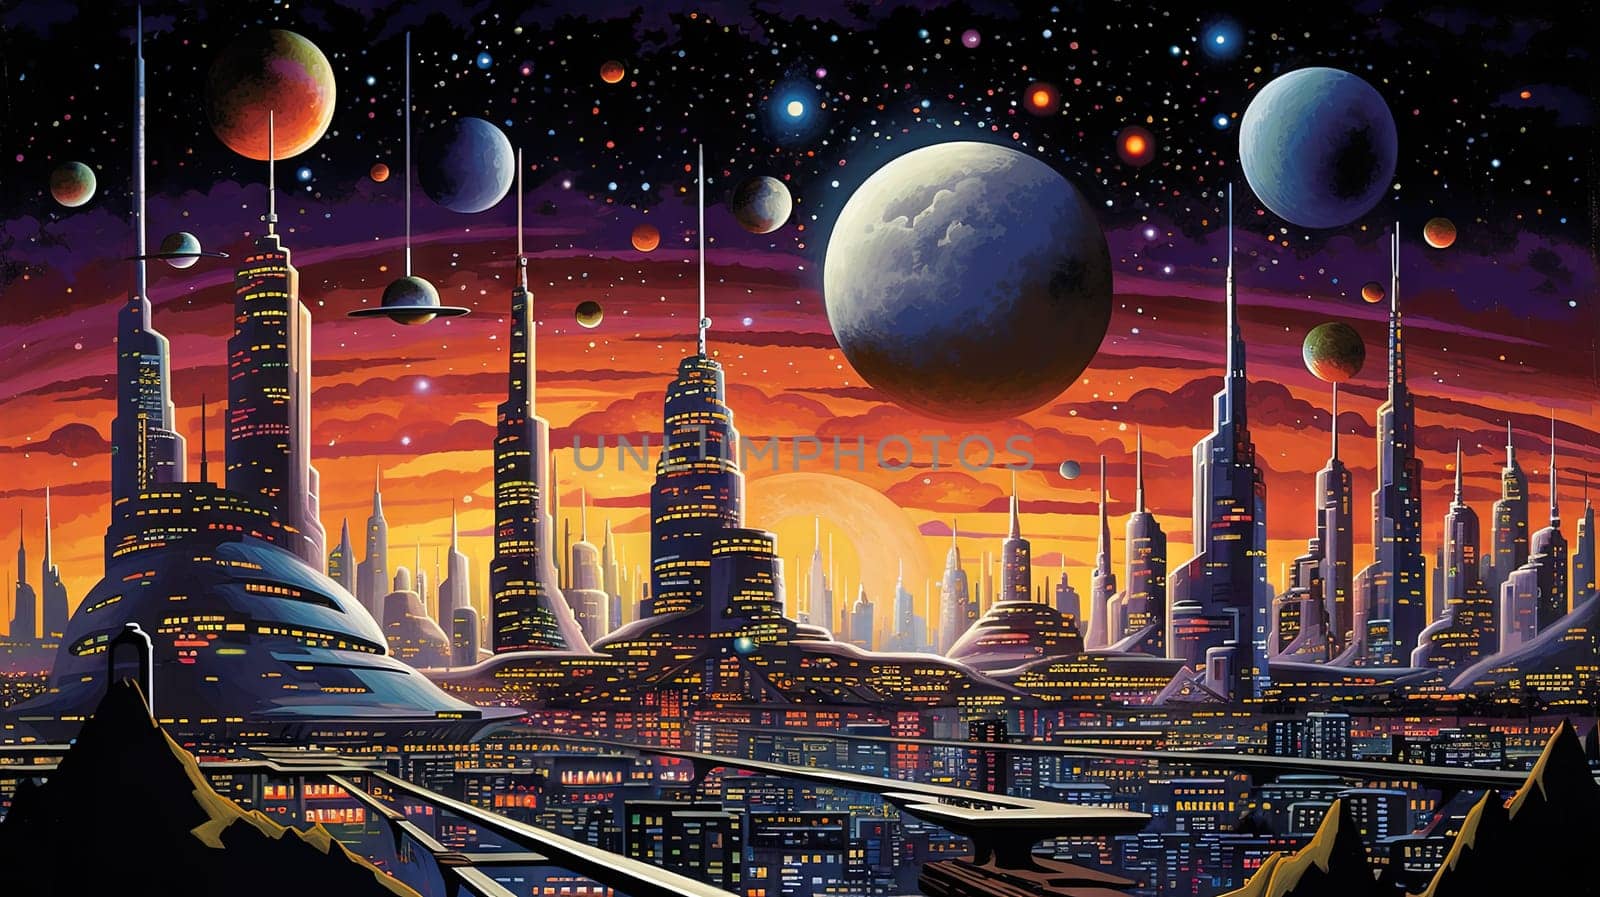 Retro futuristic city in the old school sci-fi art scene. Retro space landscape with city. Generated AI